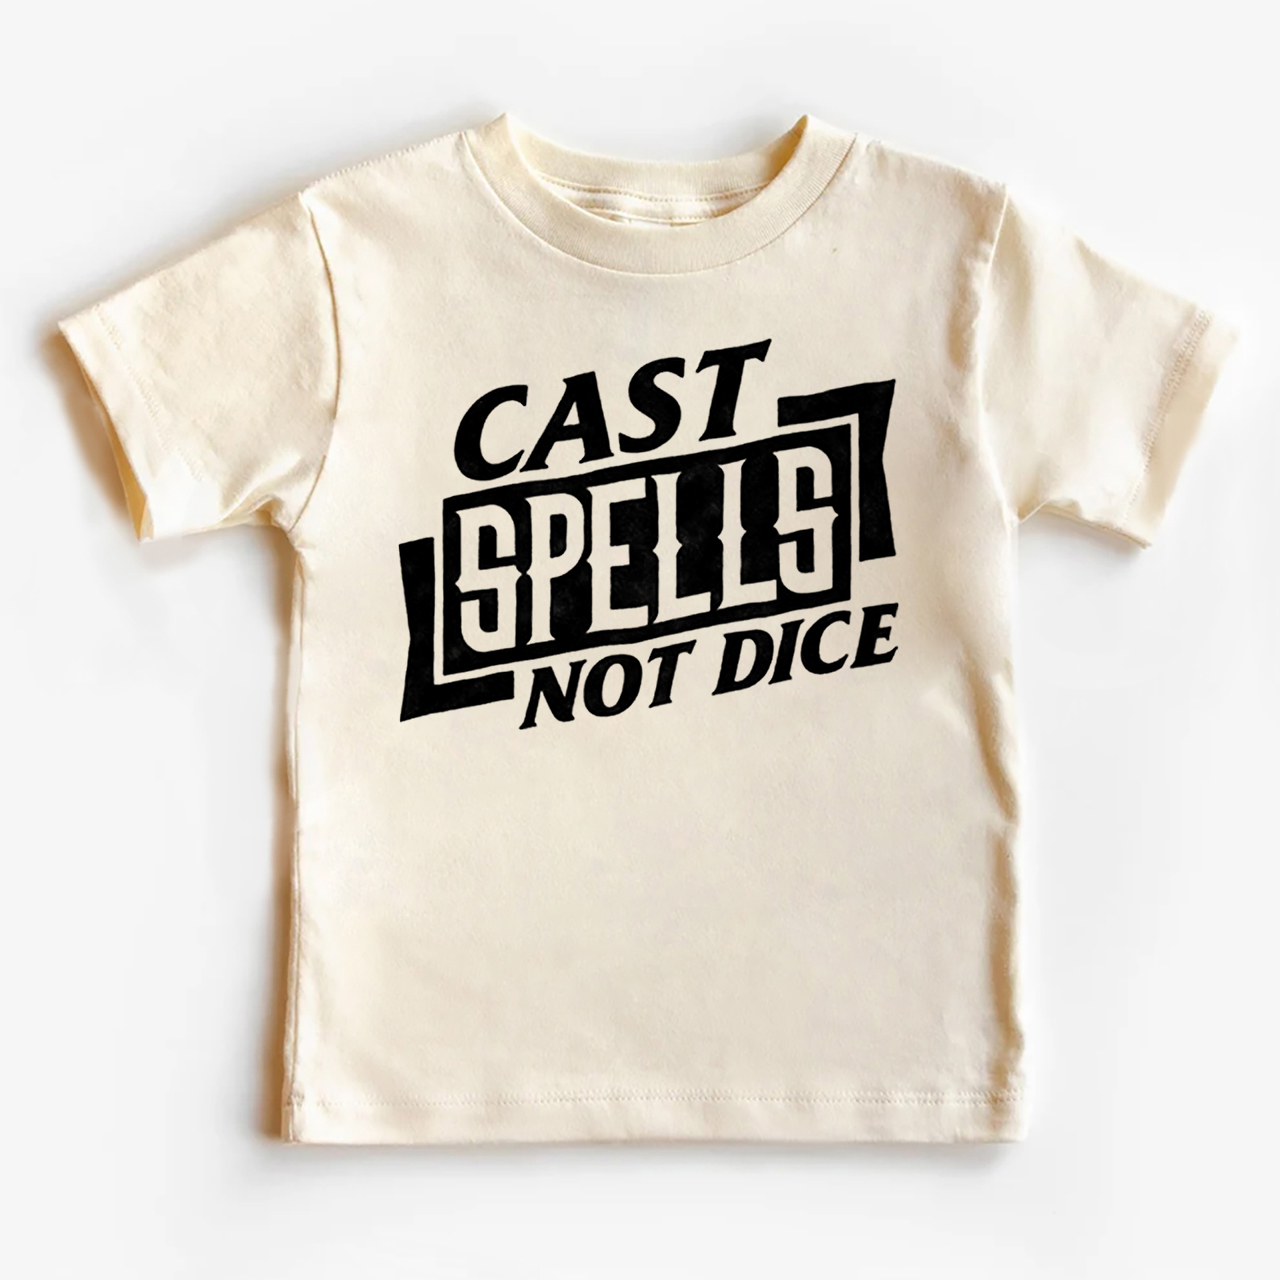 Cast Spells Not Dice Kids Shirt